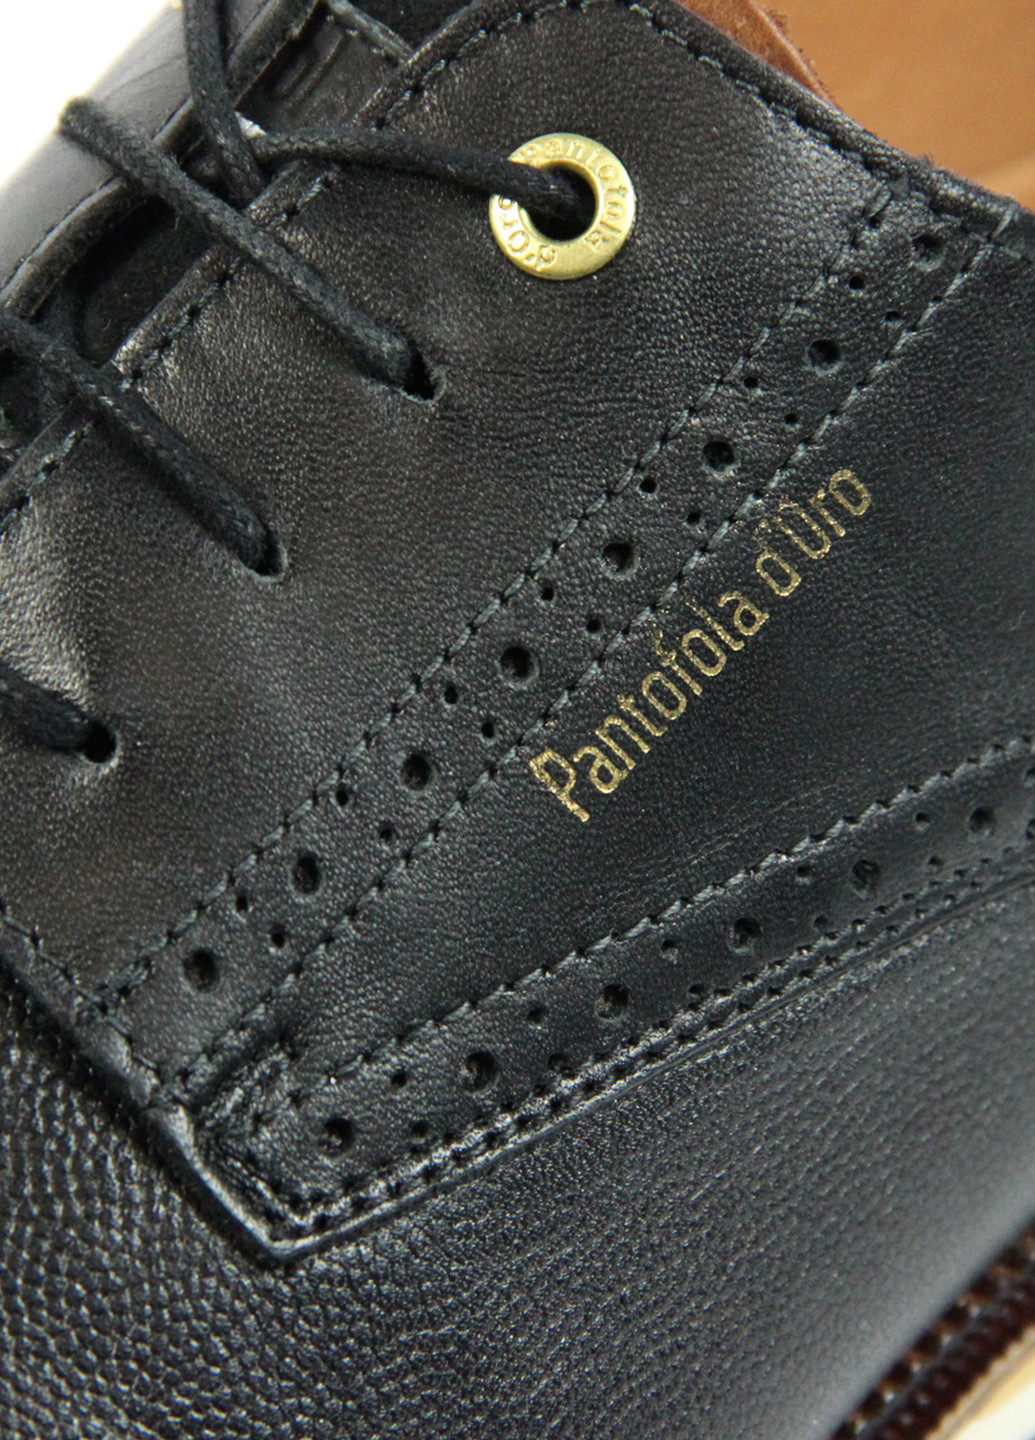 Черные кэжуал мужские туфли Pantofola D'oro